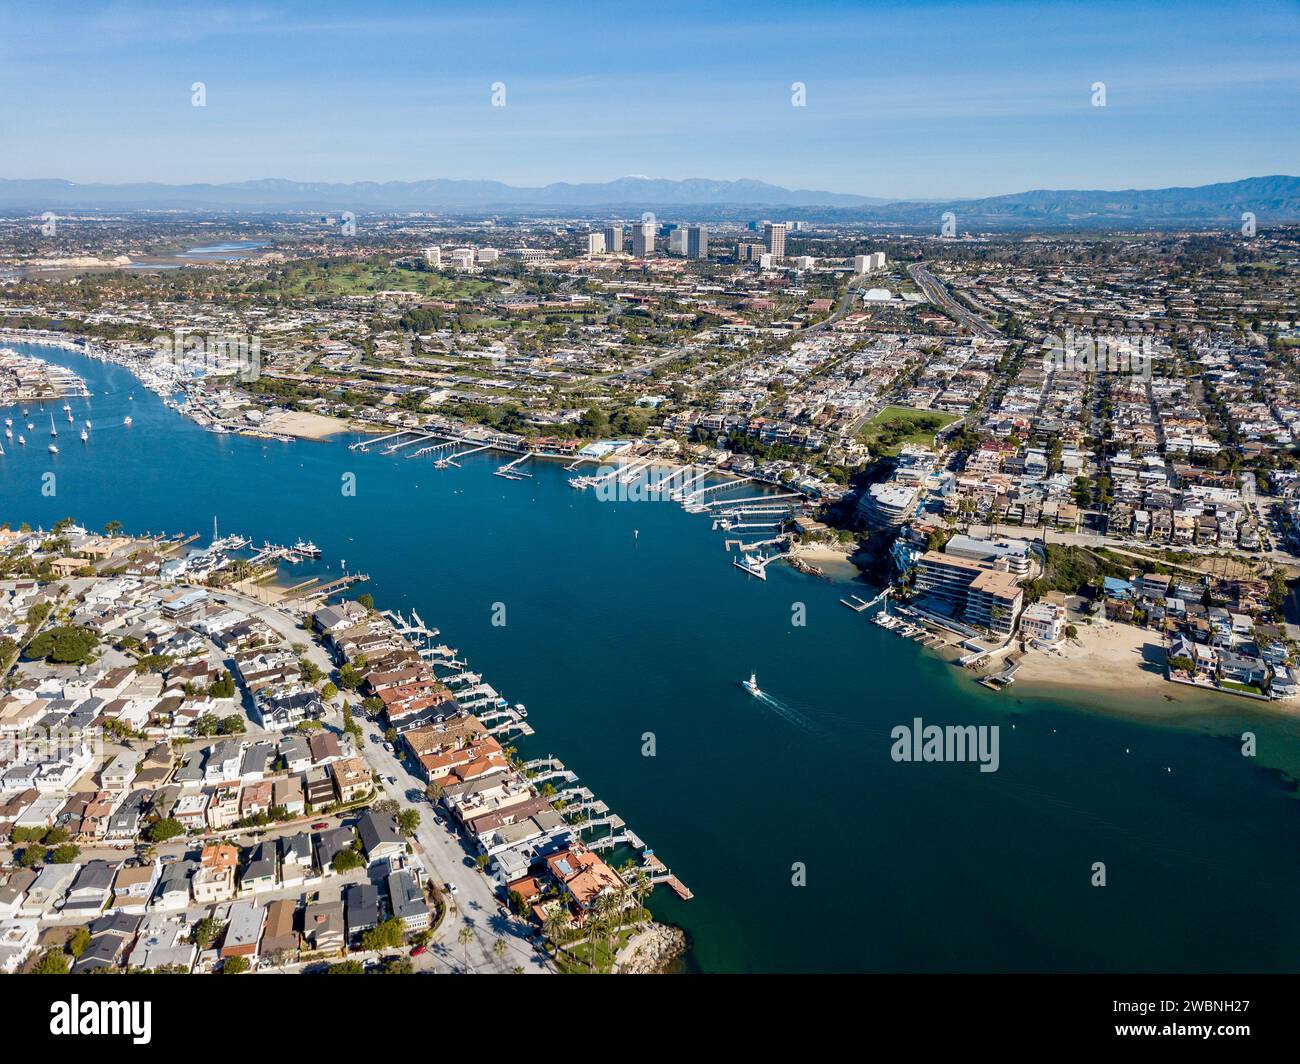 Vista aérea del paisaje de Newport Beach, casas de California, edificios y vías fluviales Foto de stock